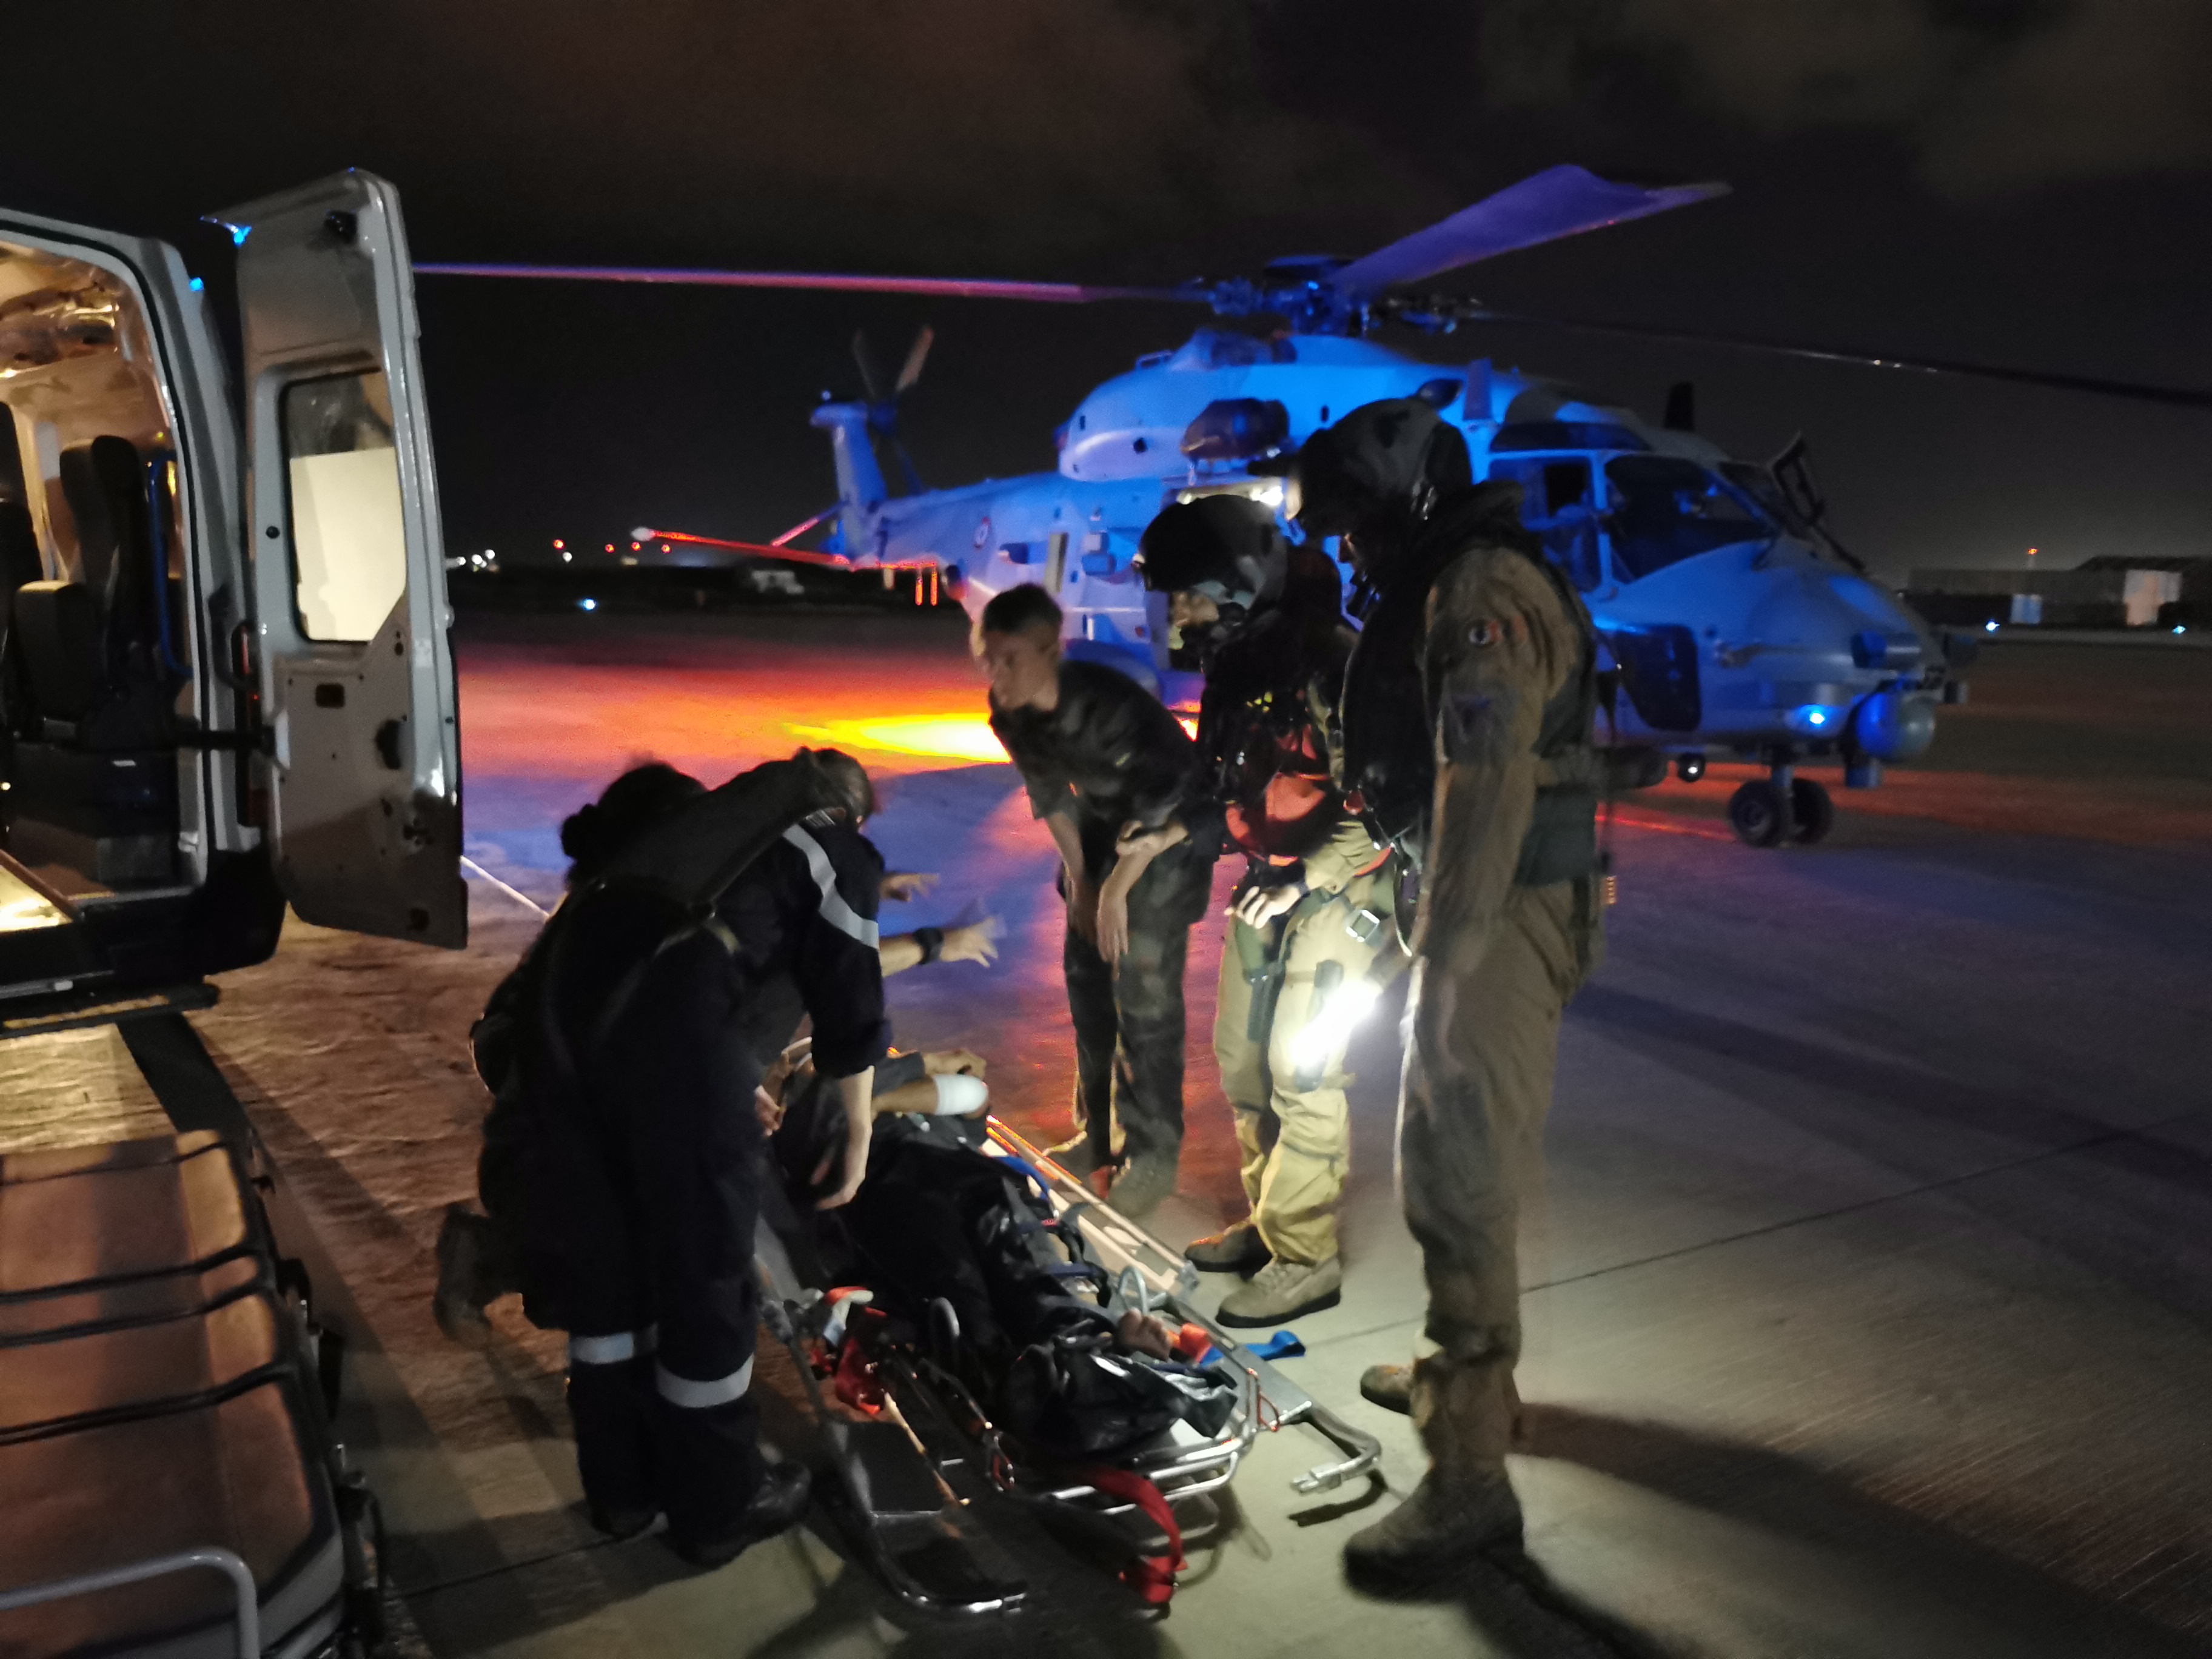  ANTARES – Le groupe aéronaval porte assistance à un marin au large de Djibouti